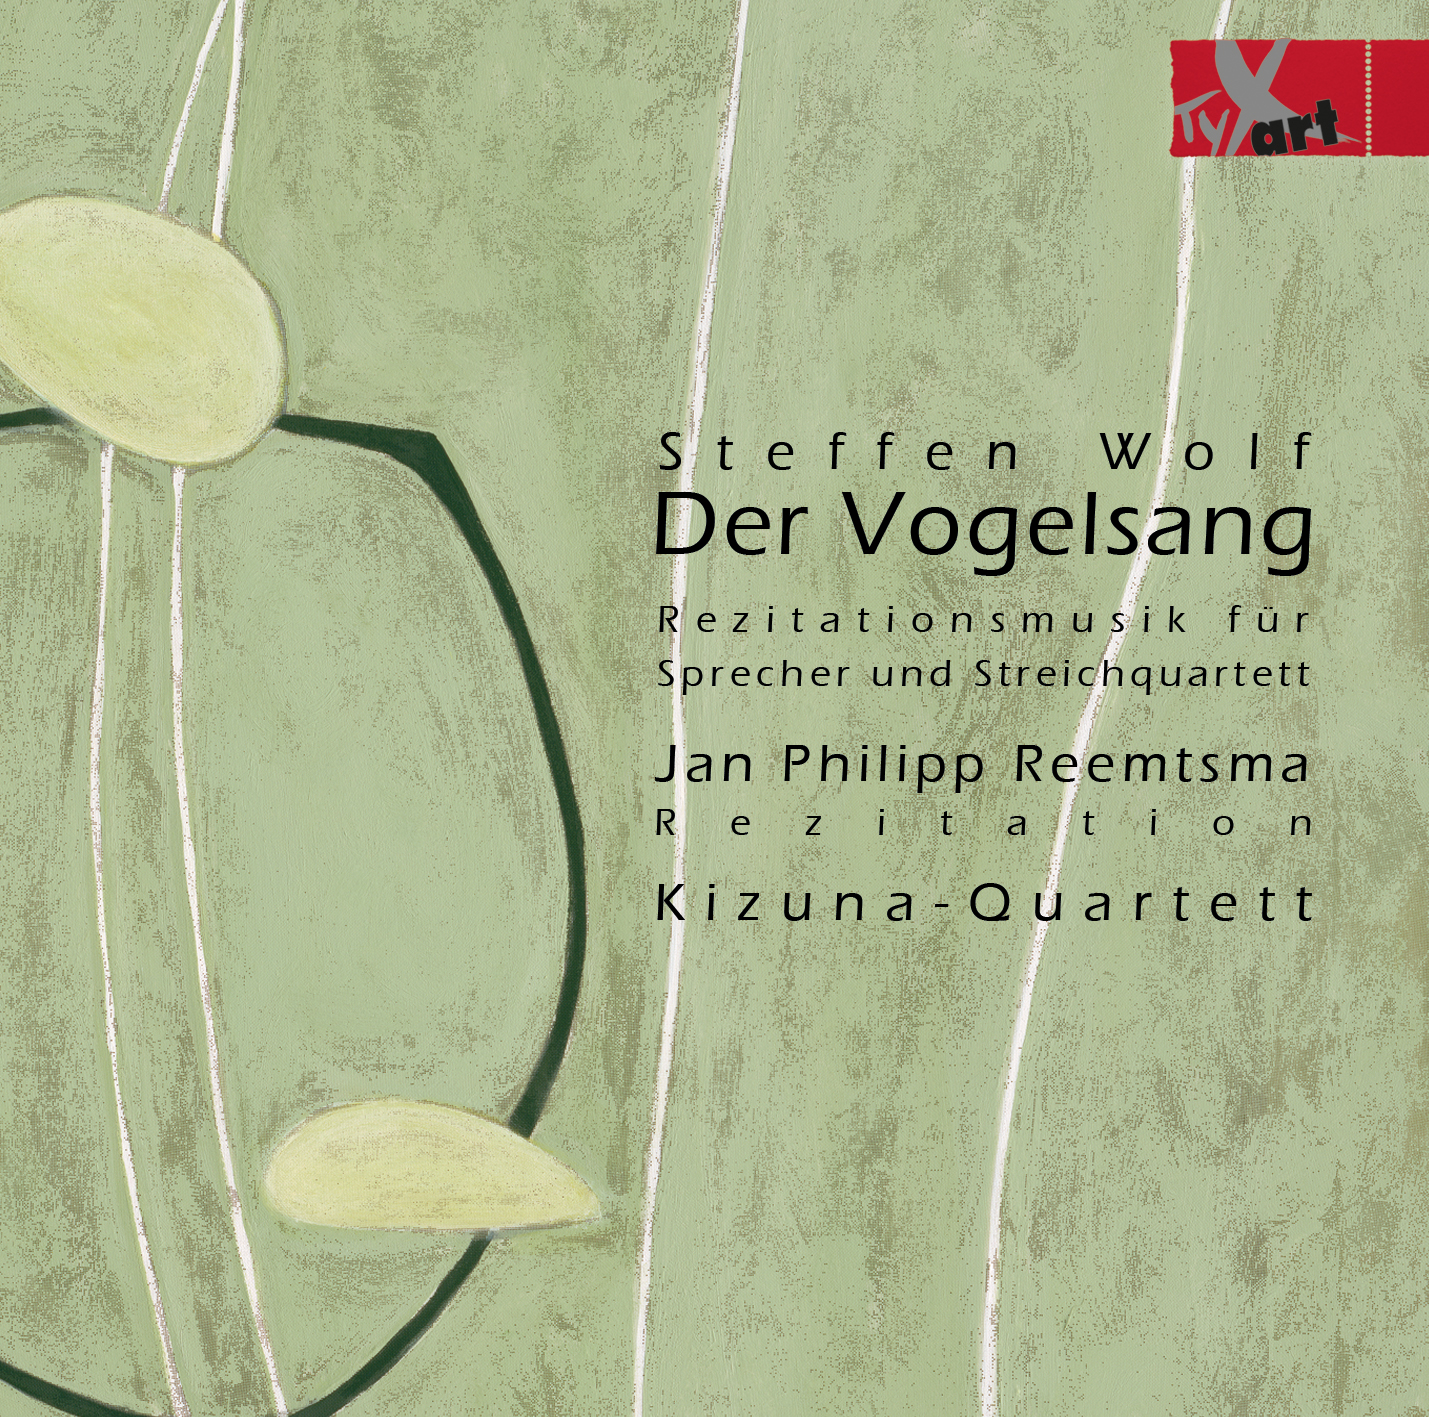 Steffen Wolf - Der Vogelsang - Jan Philipp Reemtsma – Kizuna-Quartett